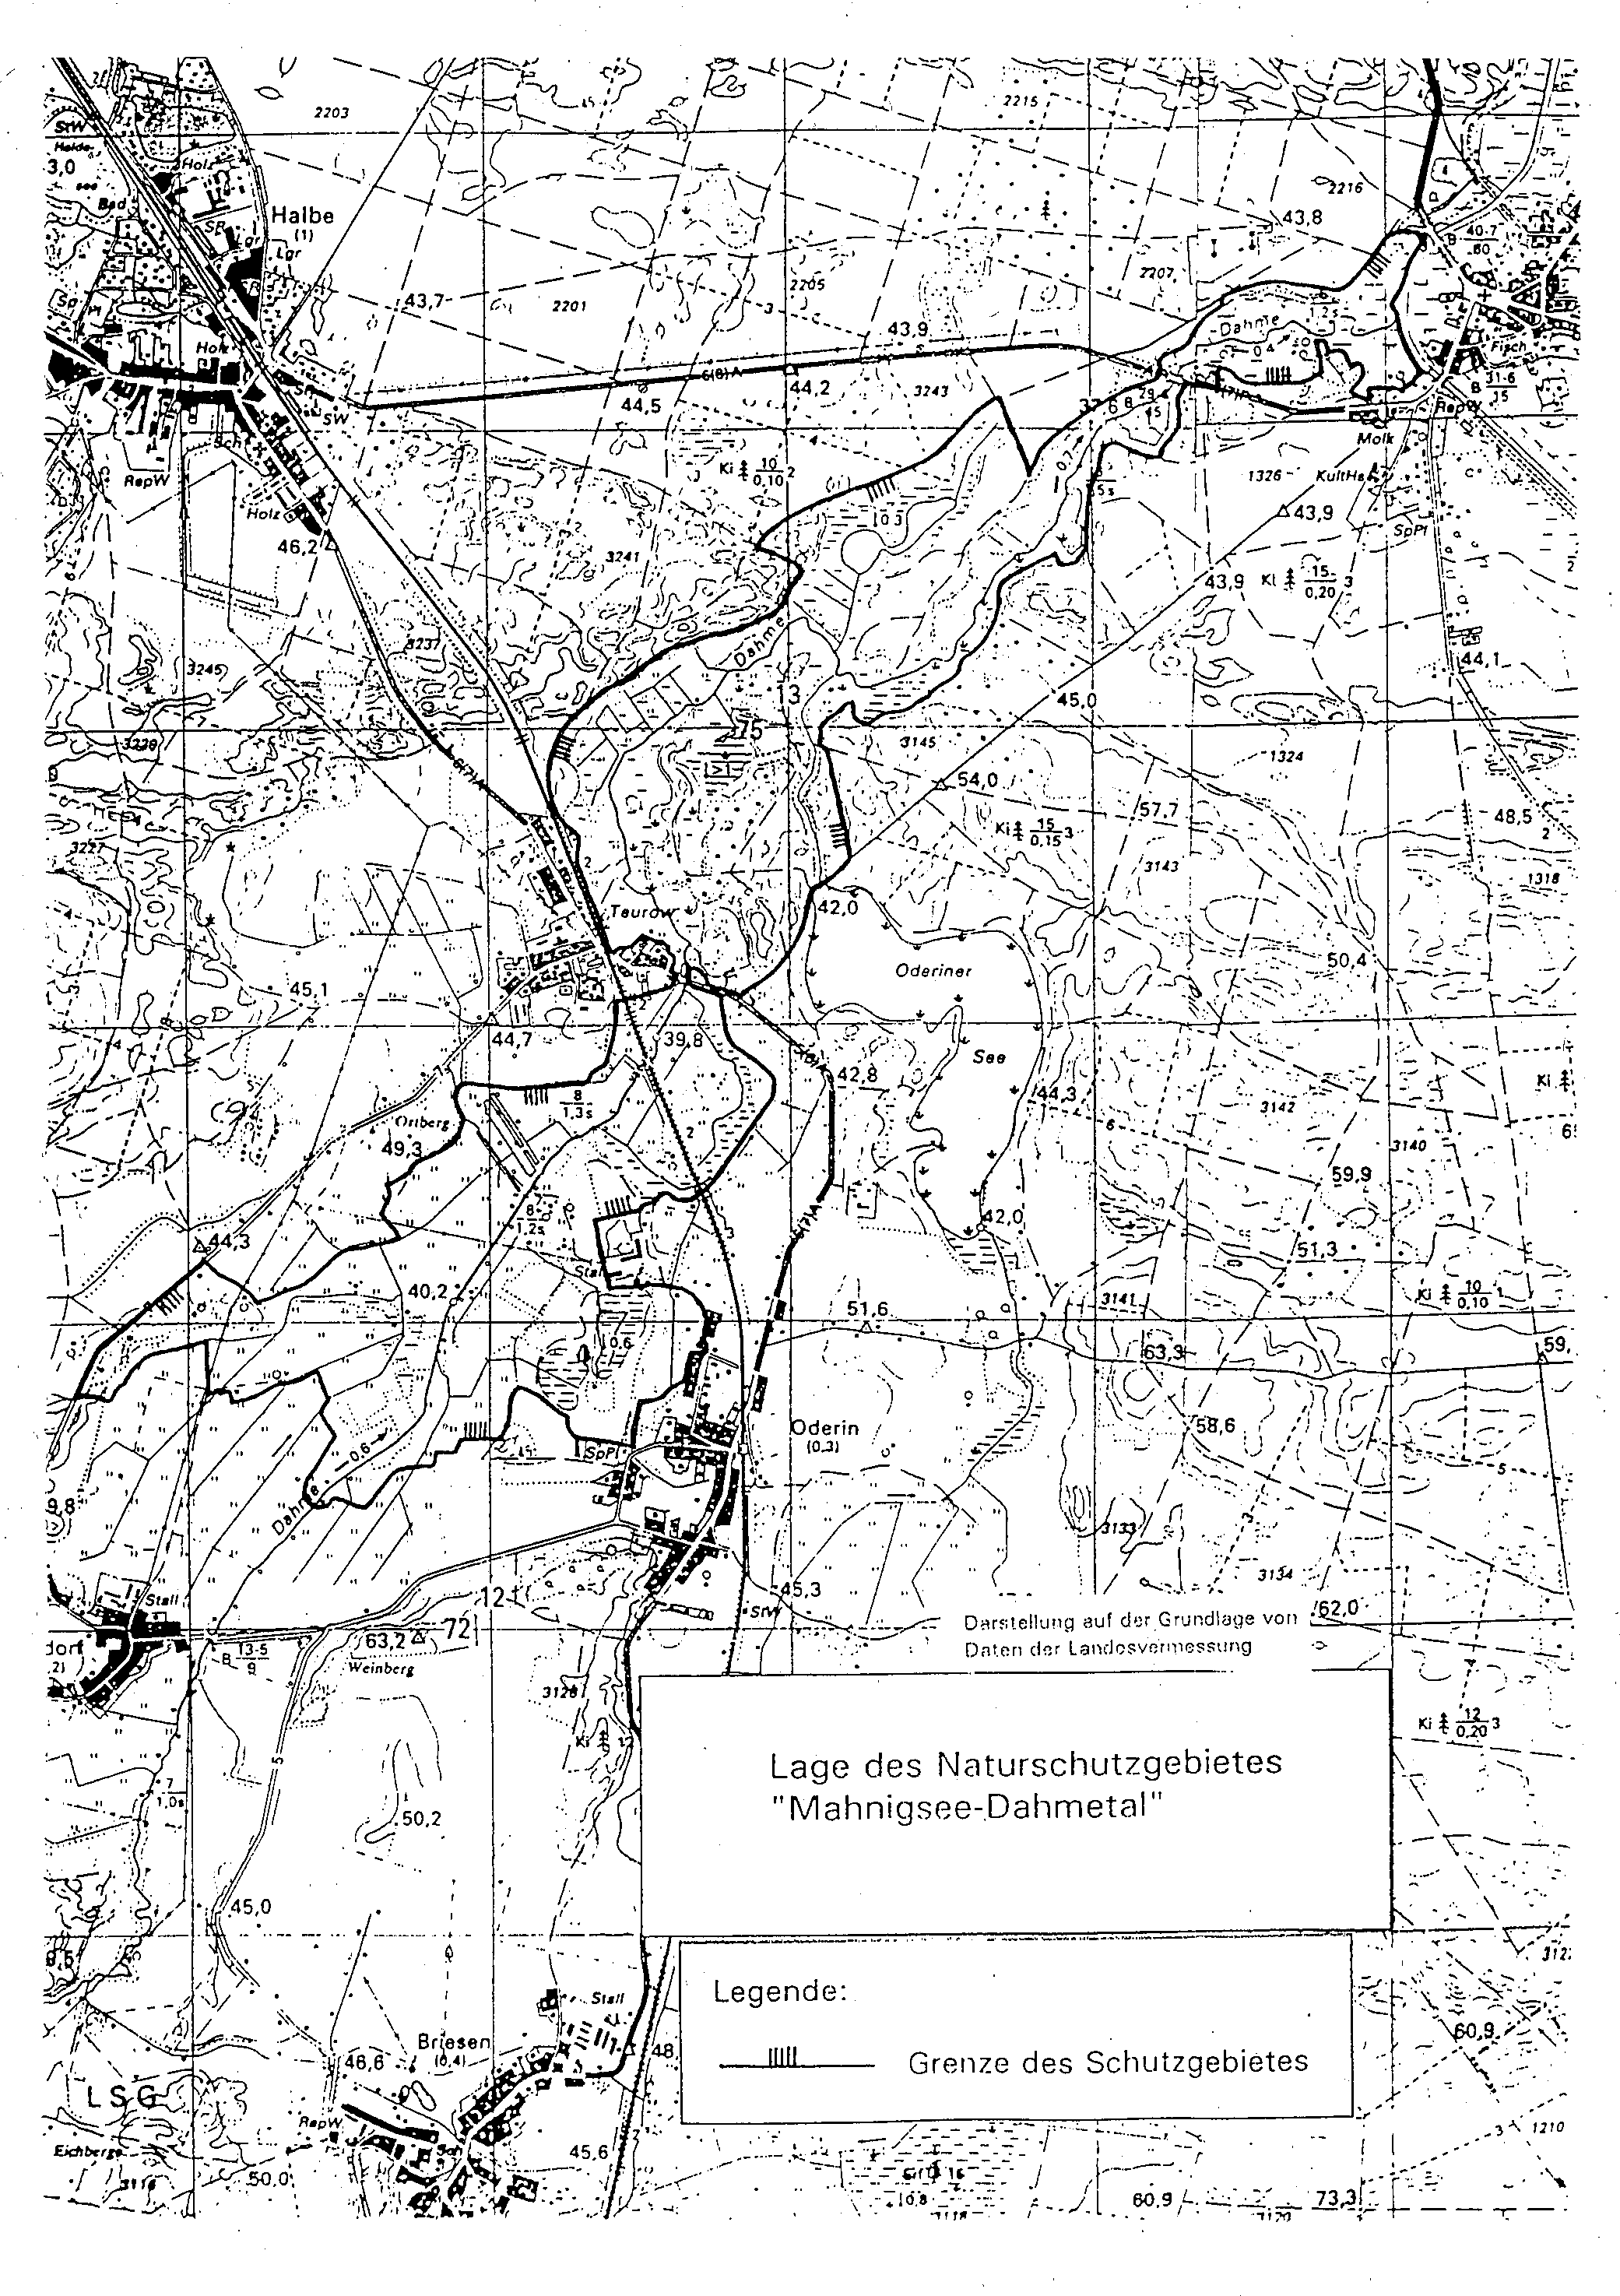 Kartenskizze zur Lage des Naturschutzgebietes "Mahnigsee-Dahmetal"